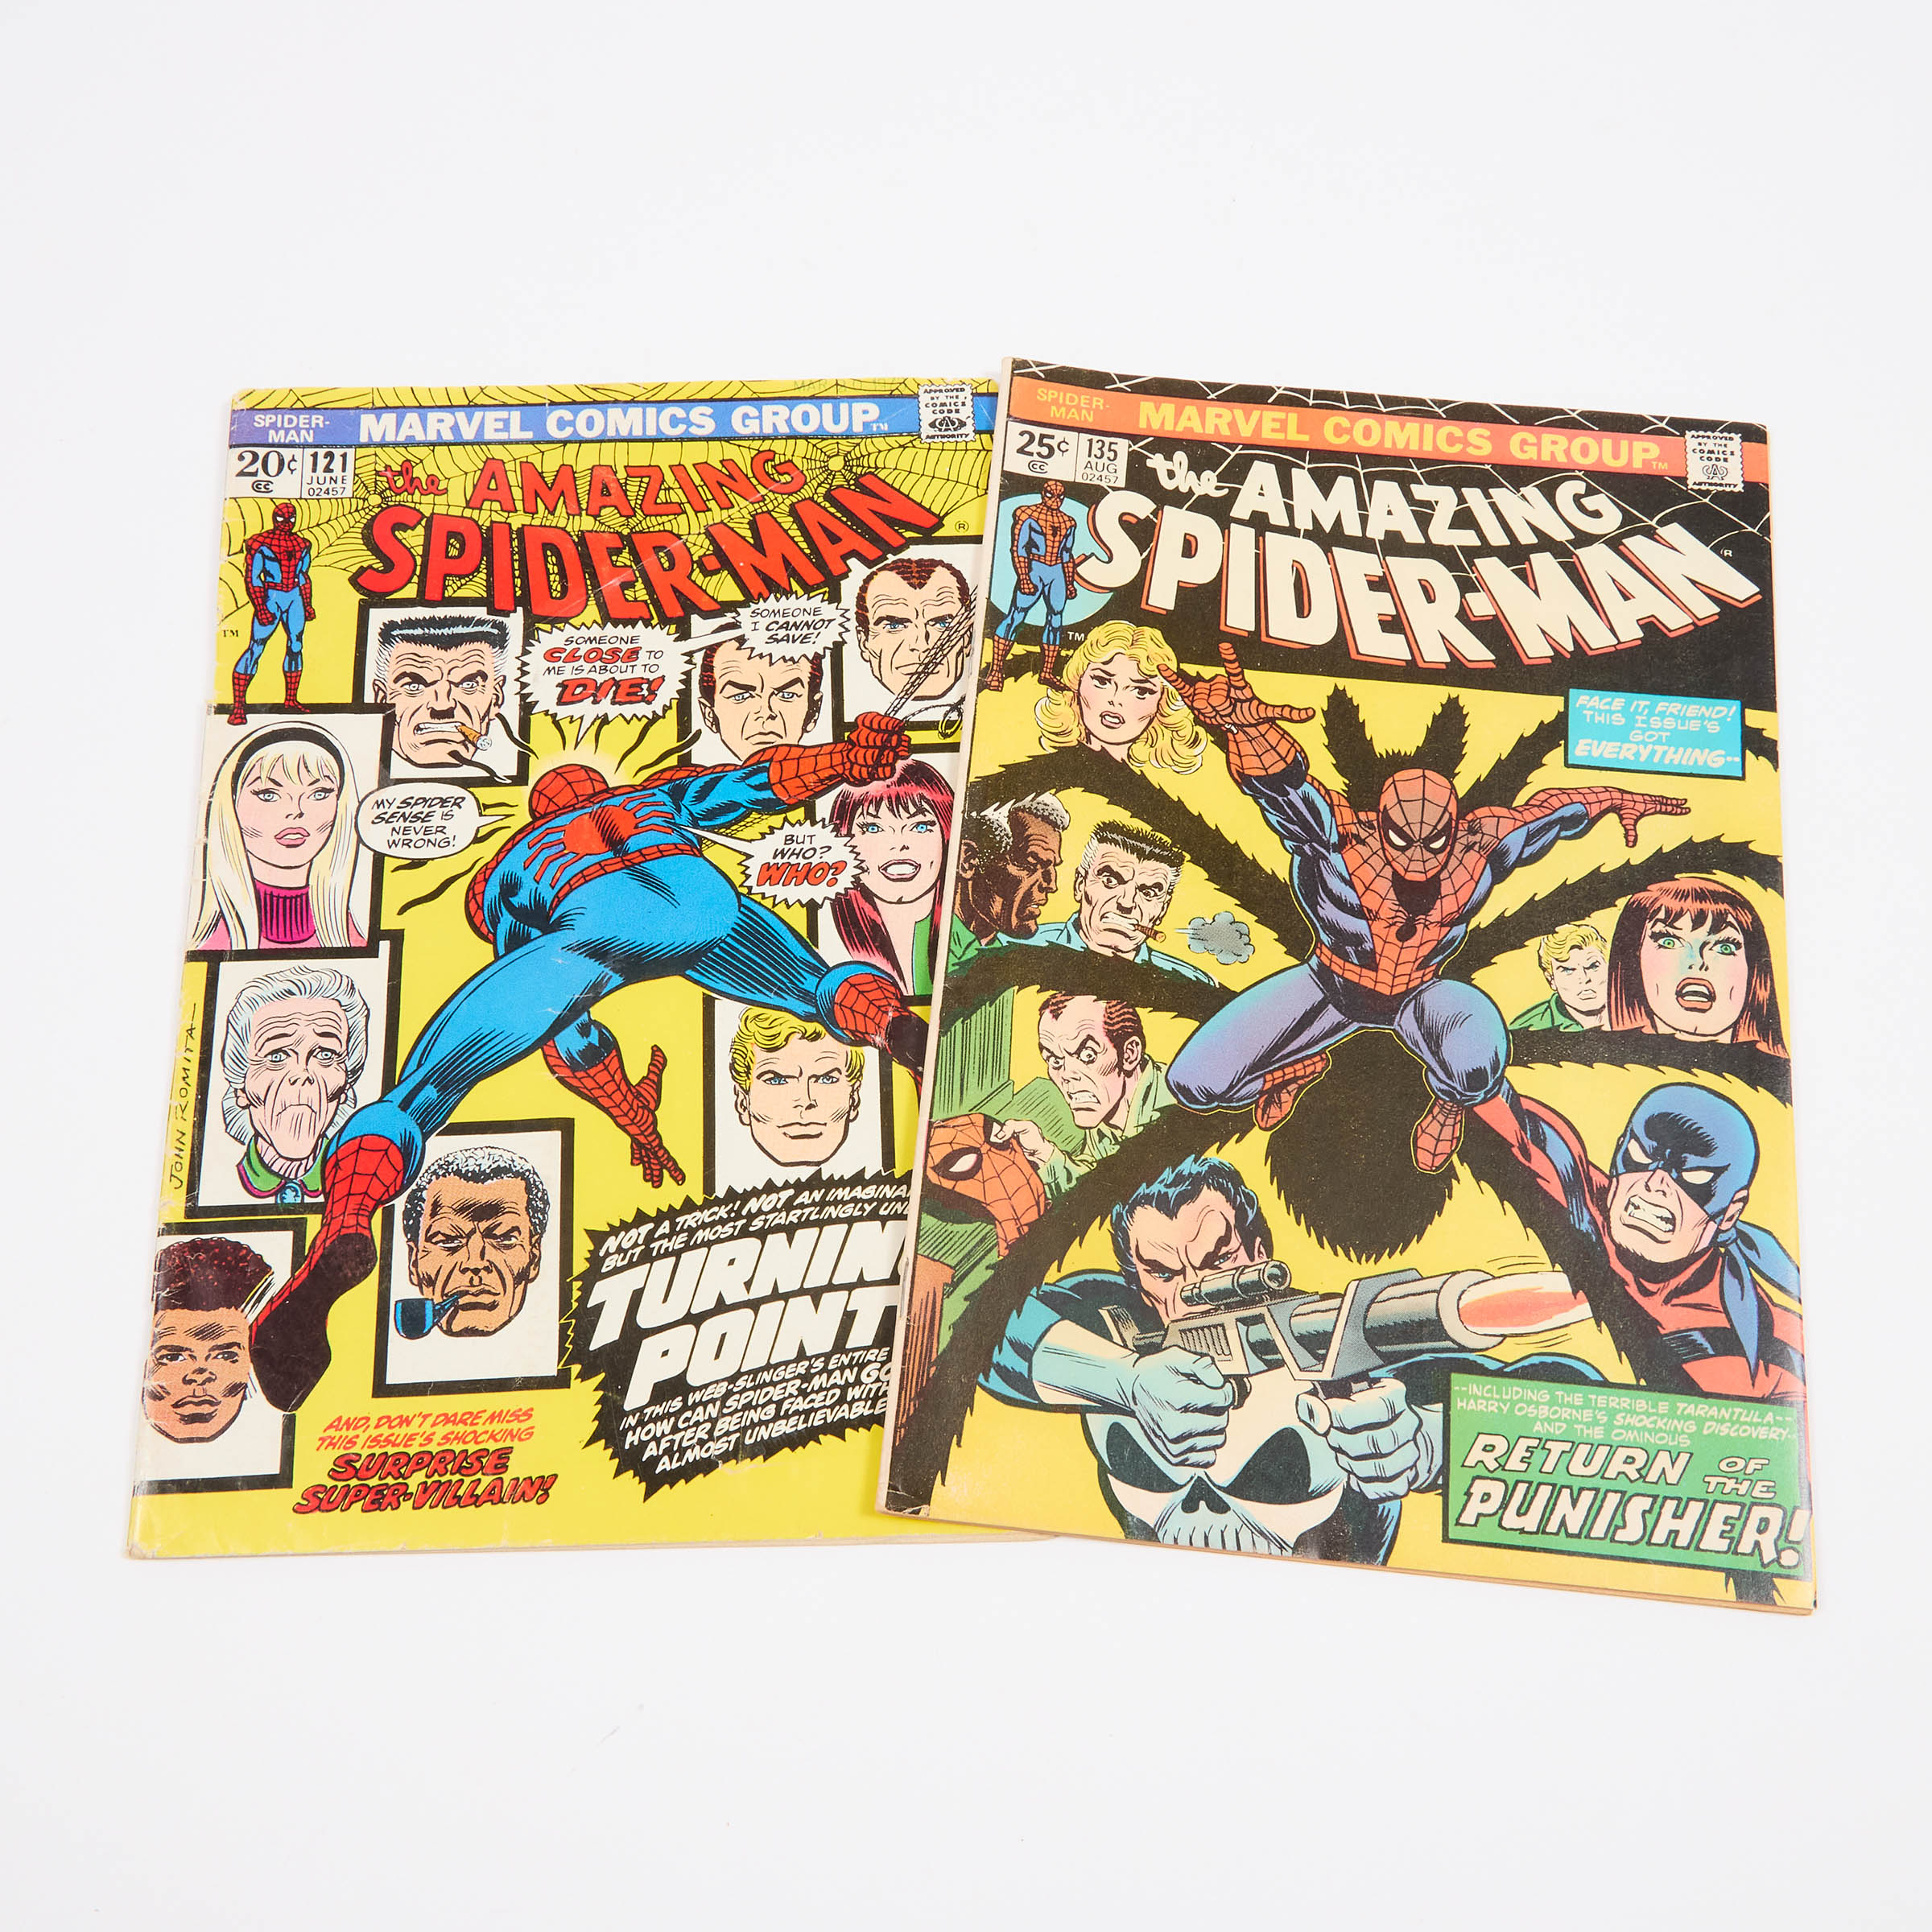 Two Marvel Comics: The Amazing